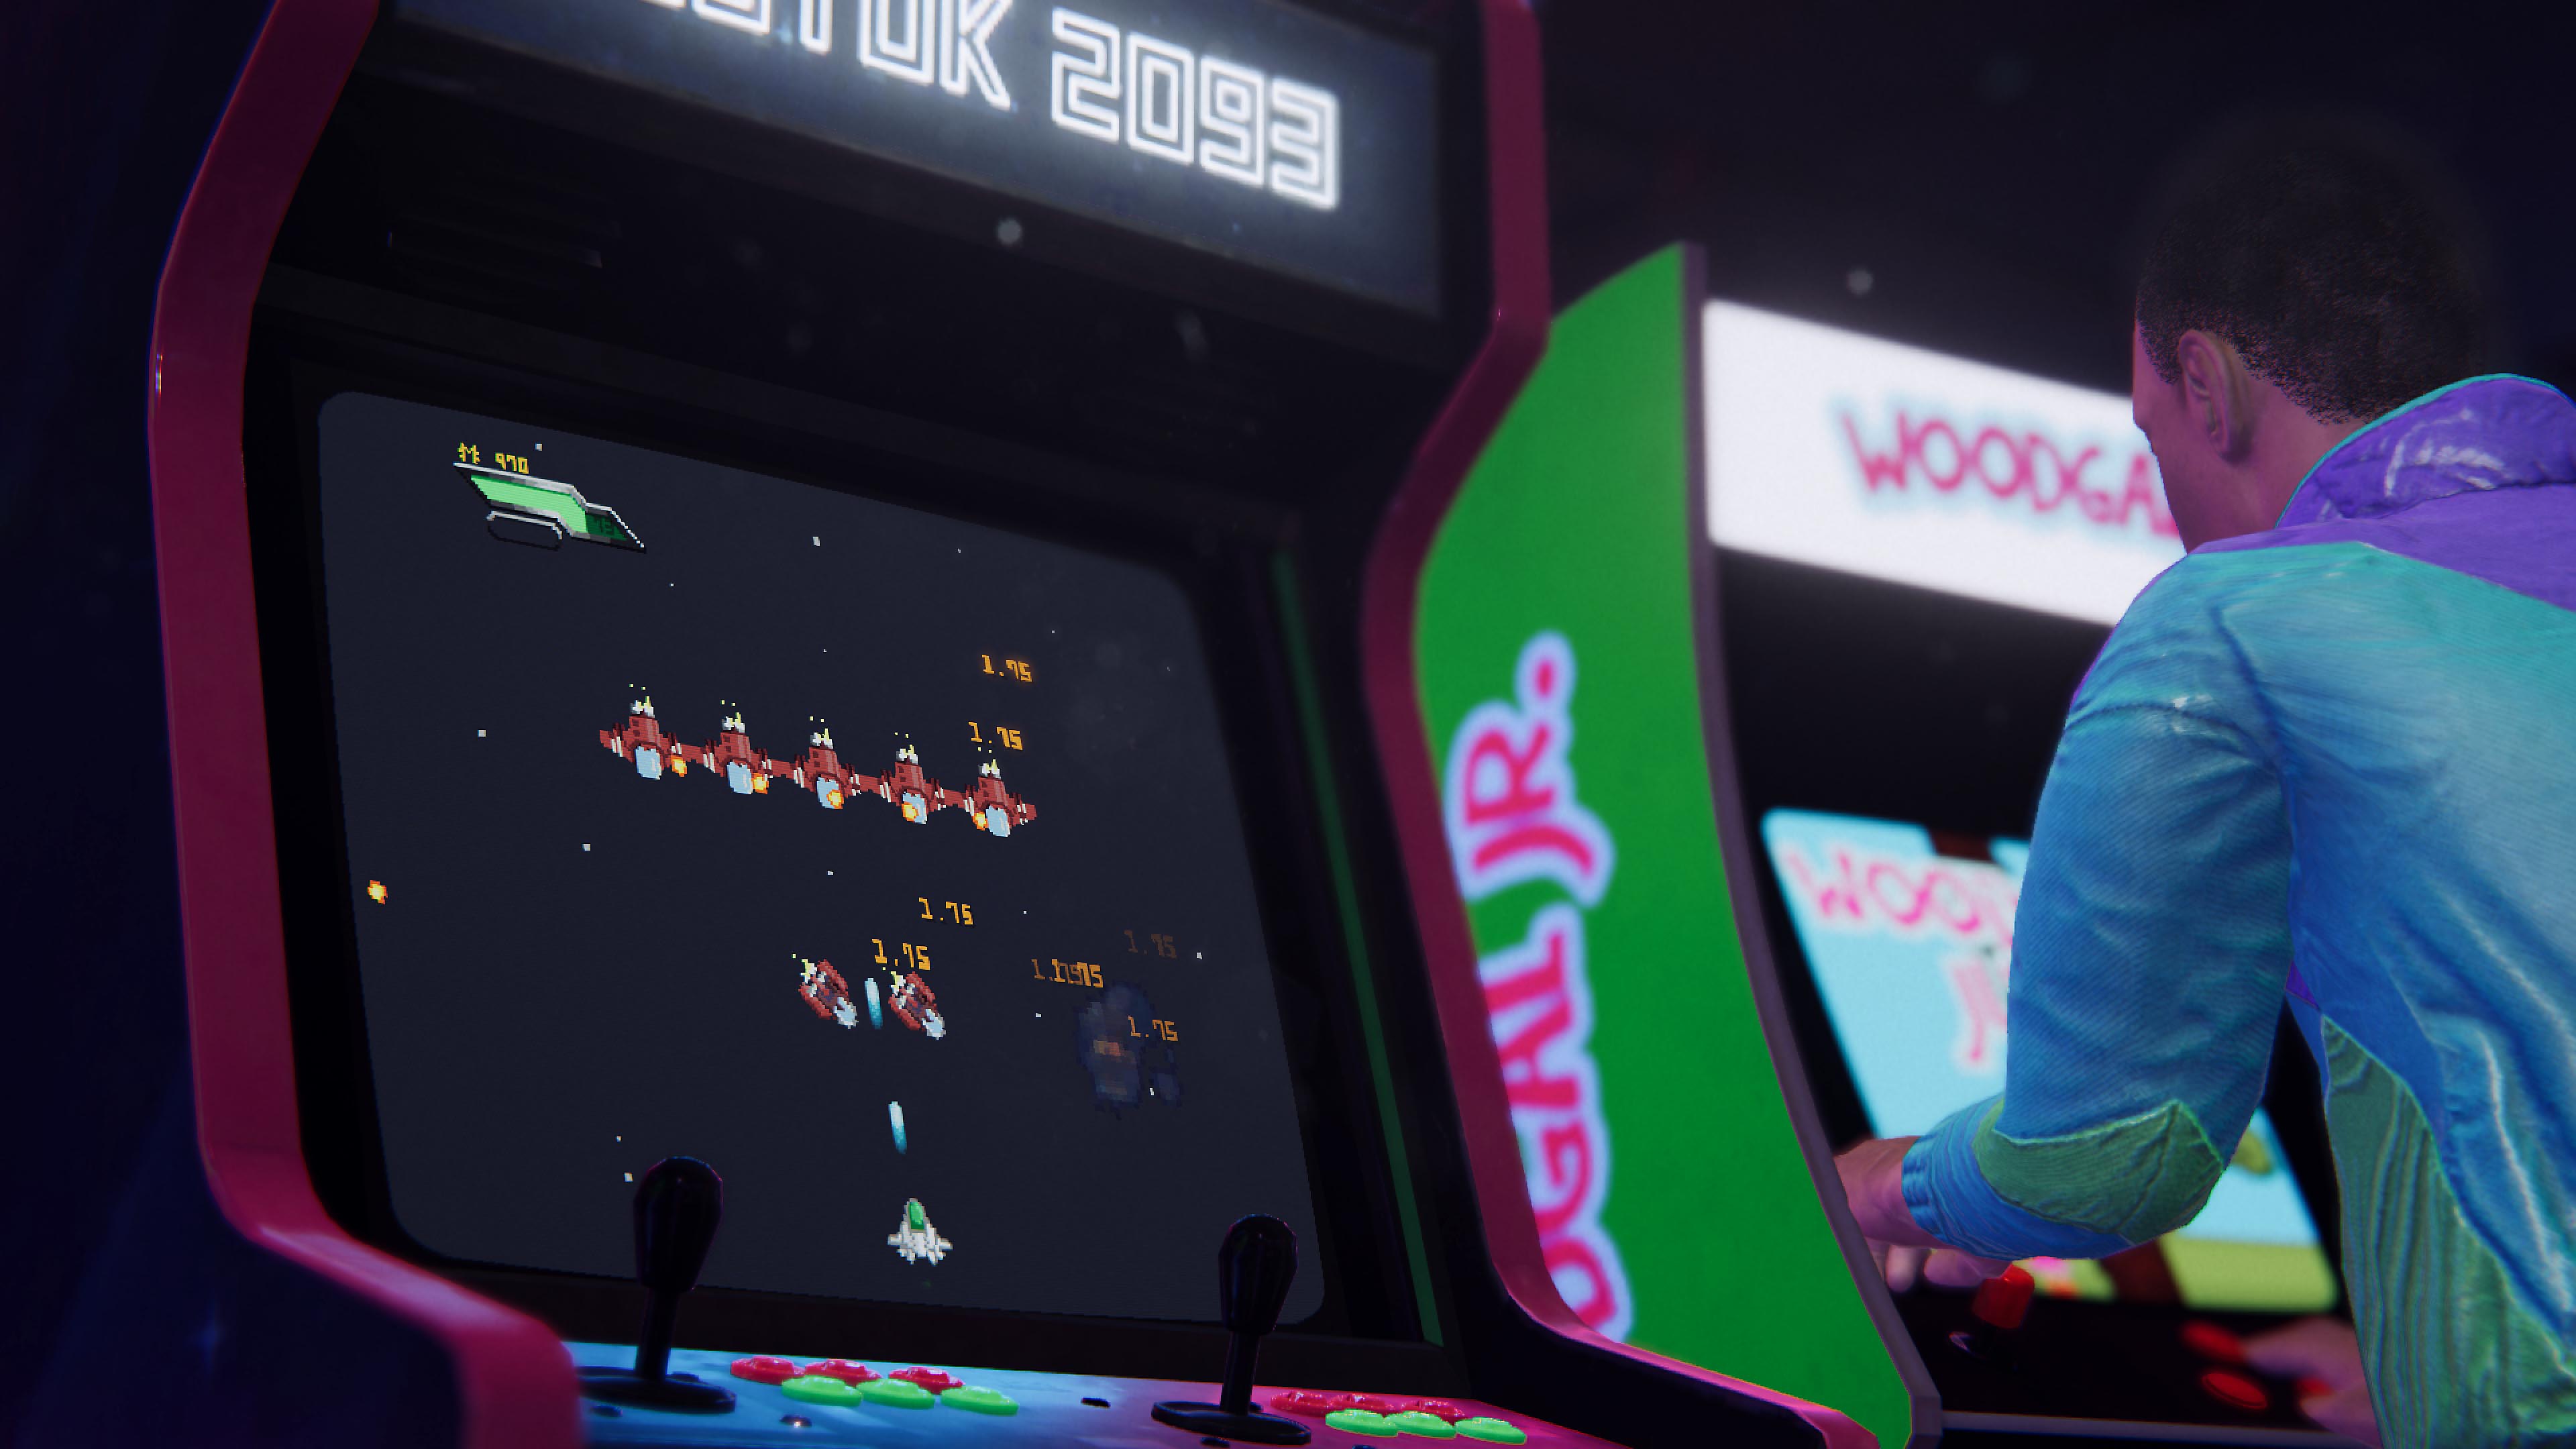 Capture d'écran d'Arcade Paradise montrant deux bornes de jeu rétro